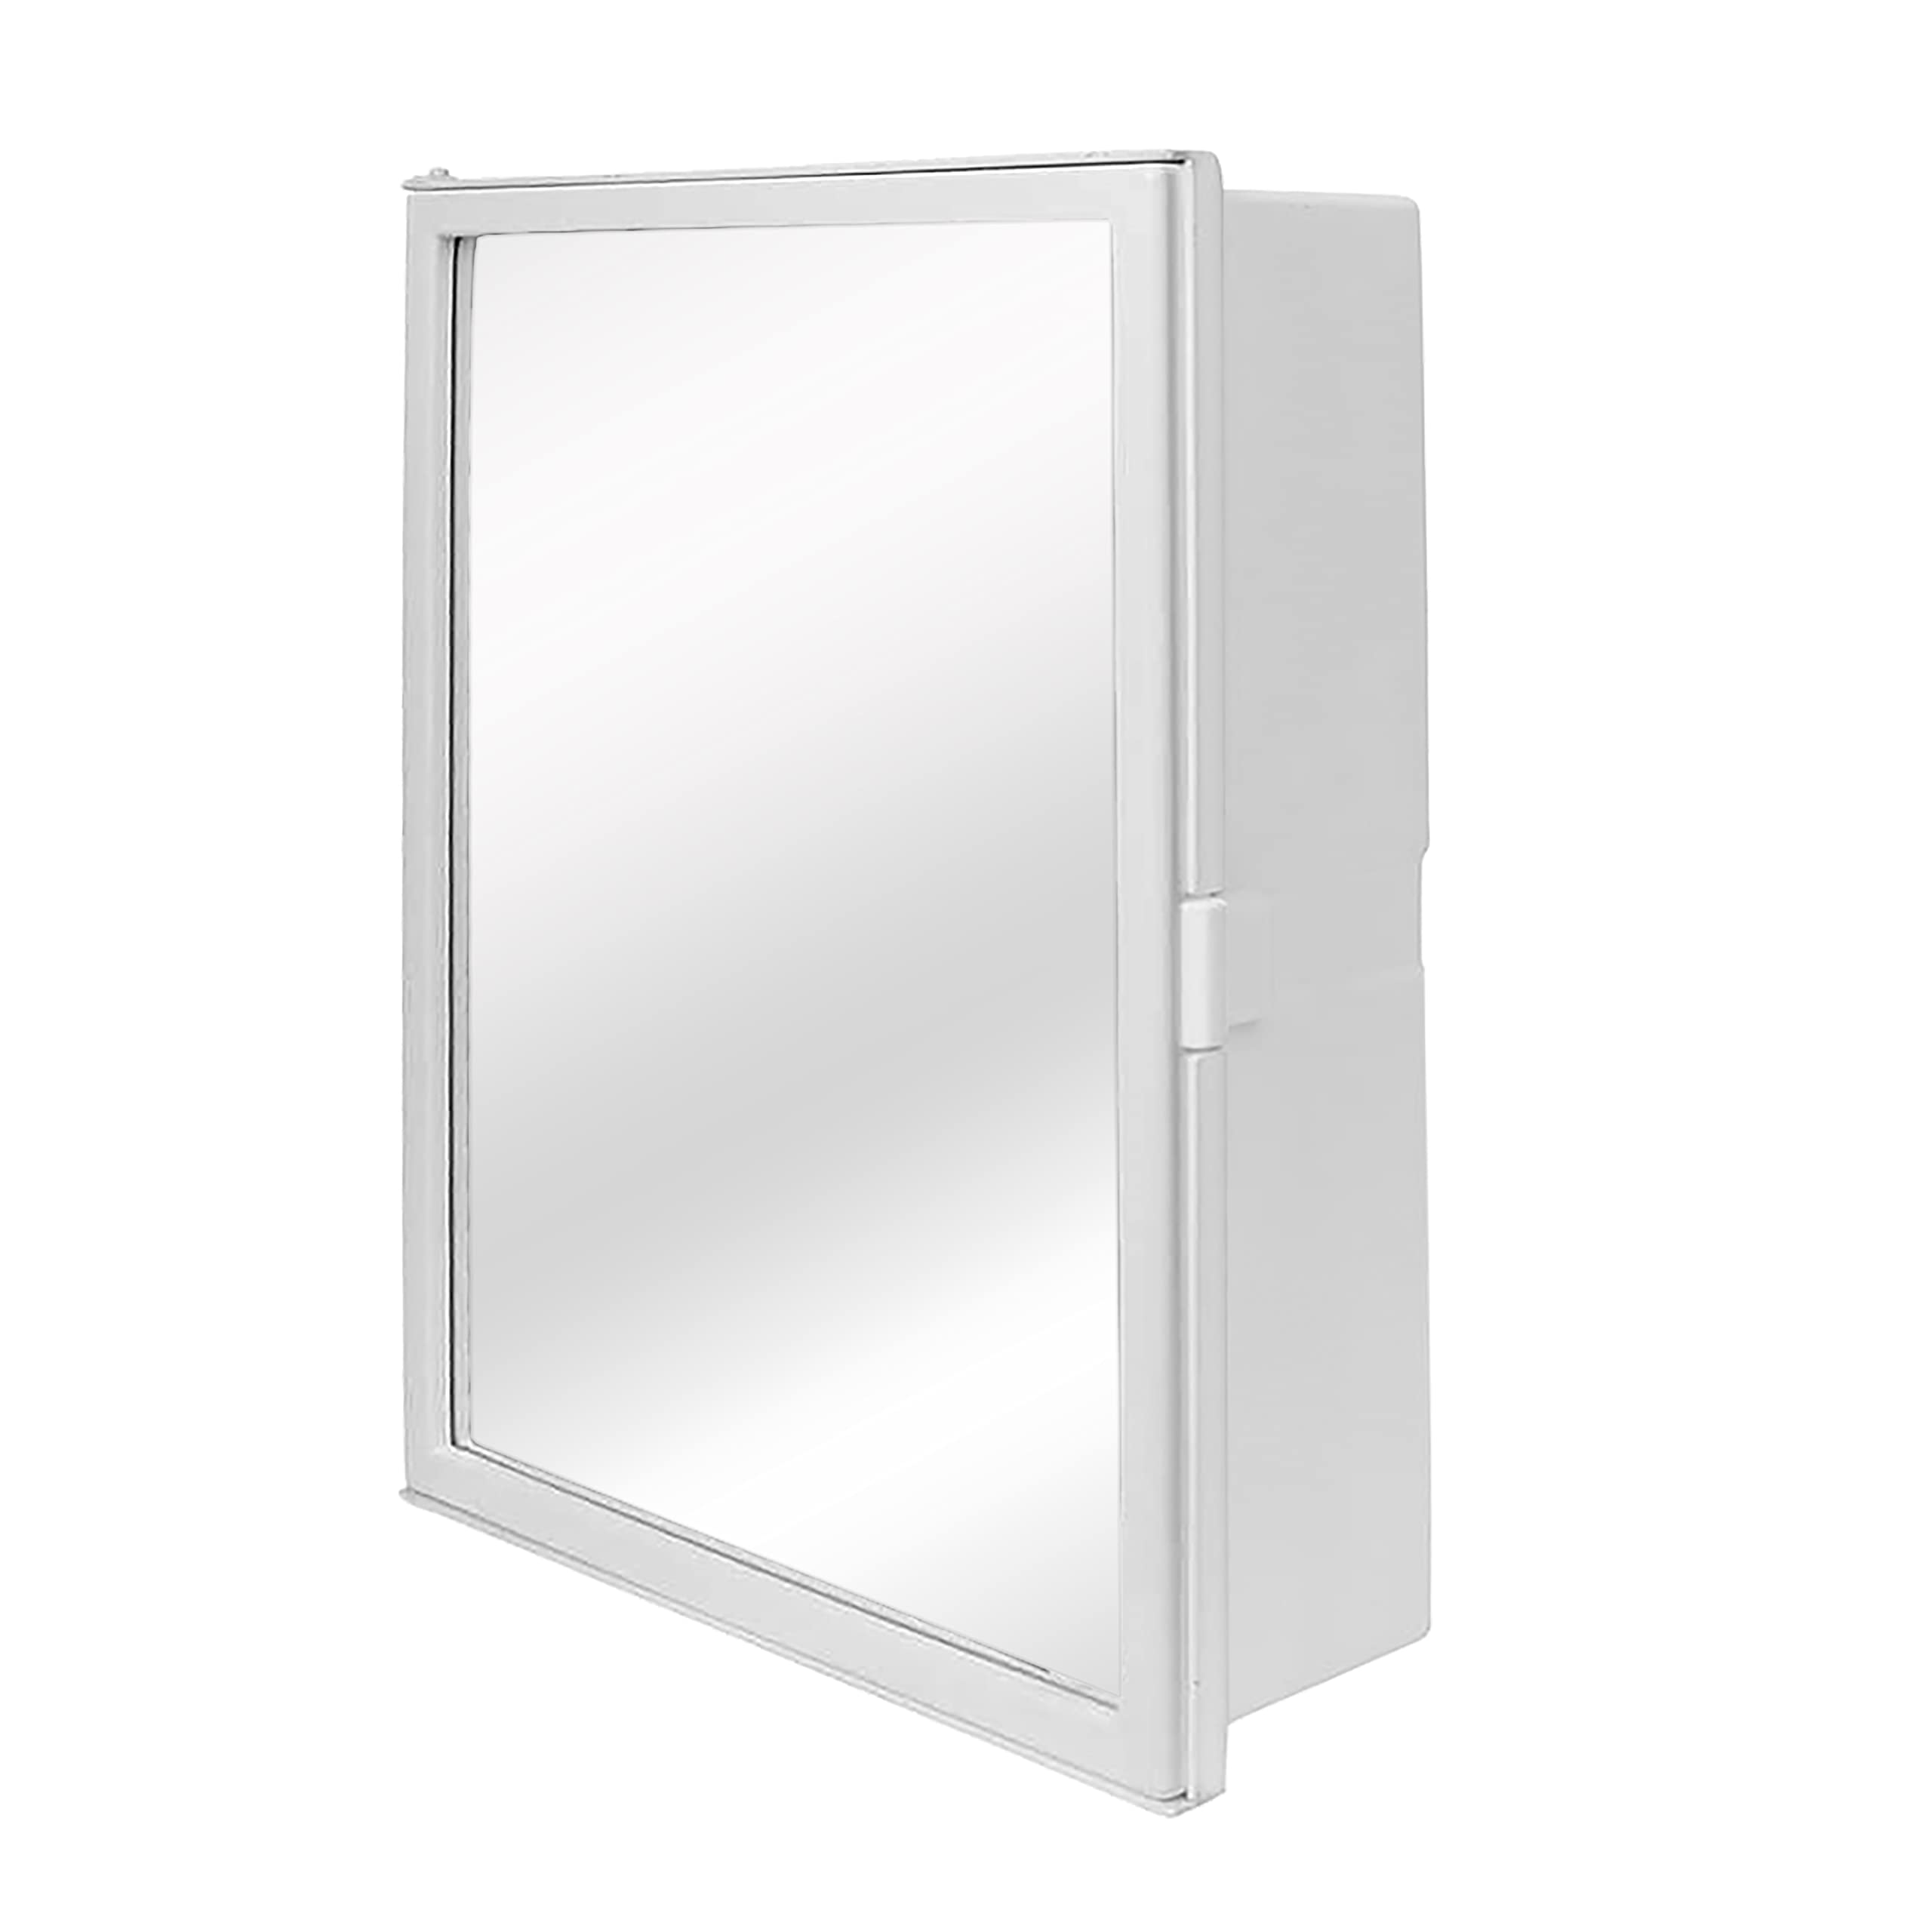 Plantex Heavy-Duty ABS Plastic Multi-Purpose Bathroom Cabinet with Mirror Door/Bathroom Accessories (White)